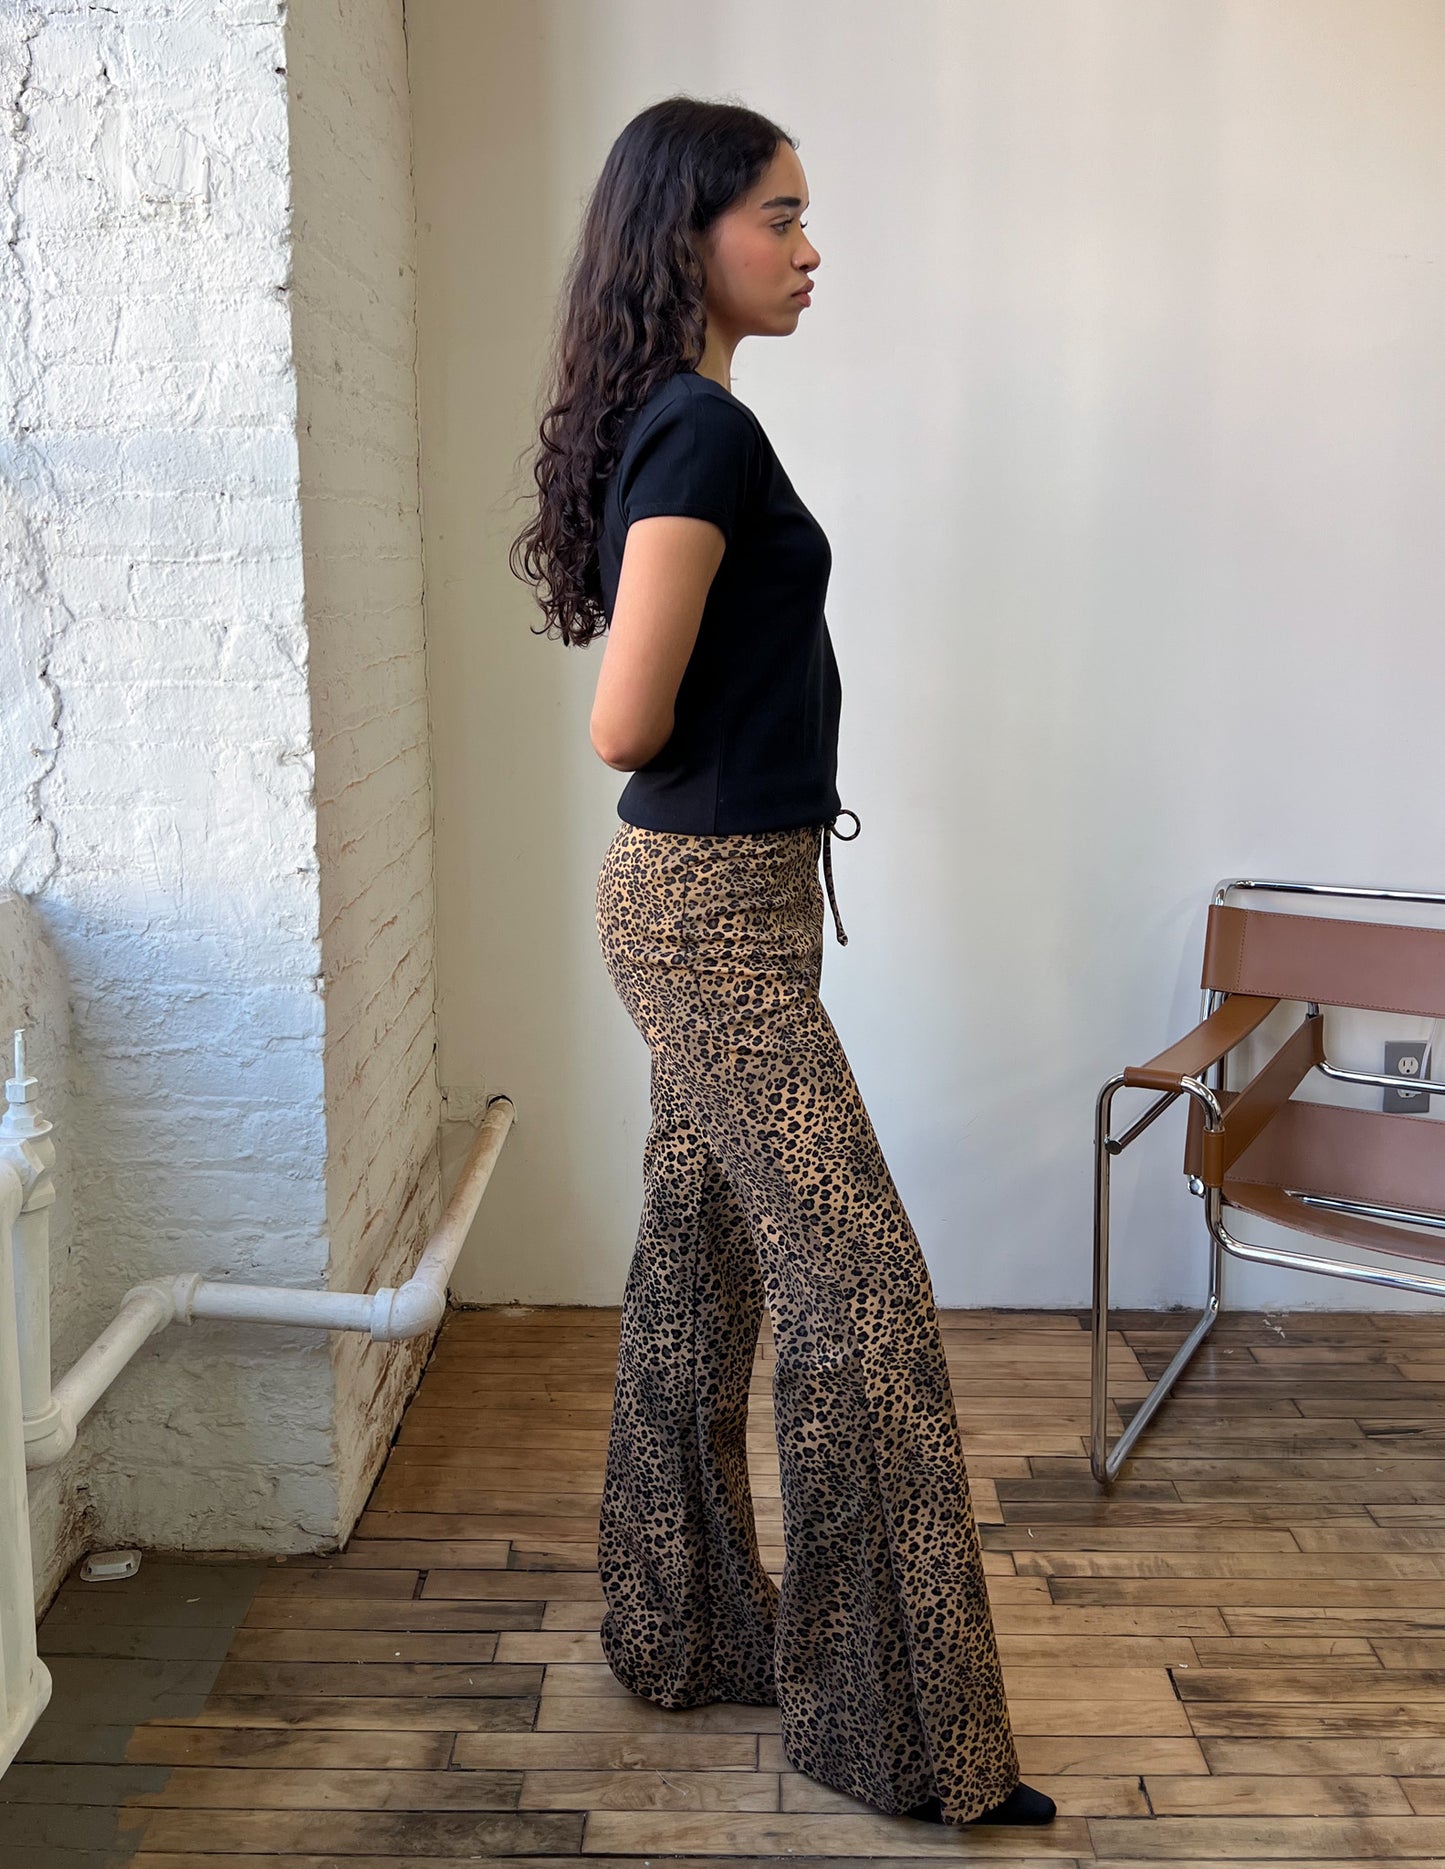 90s Leopard Print Pants